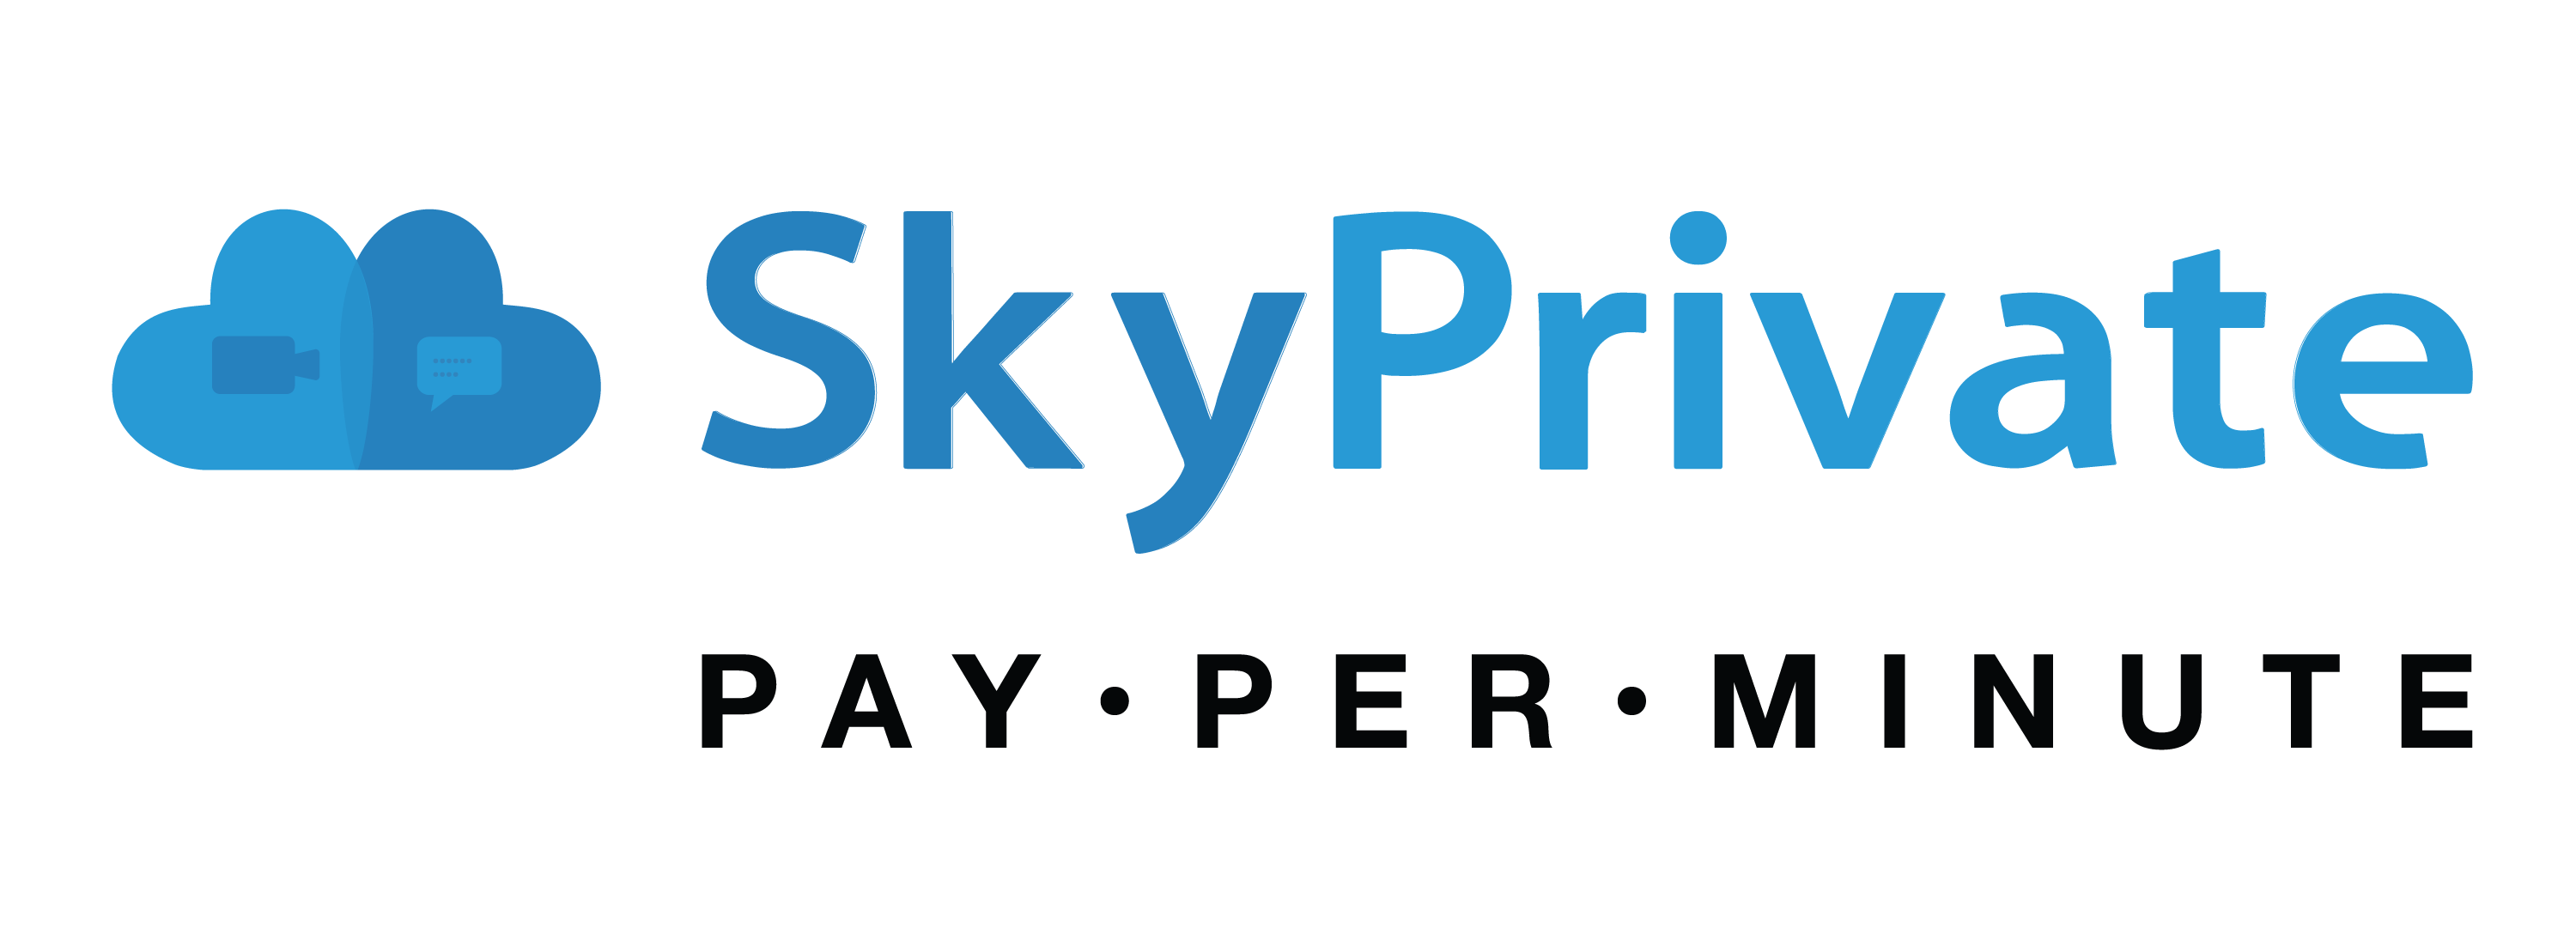 Skyprivate.